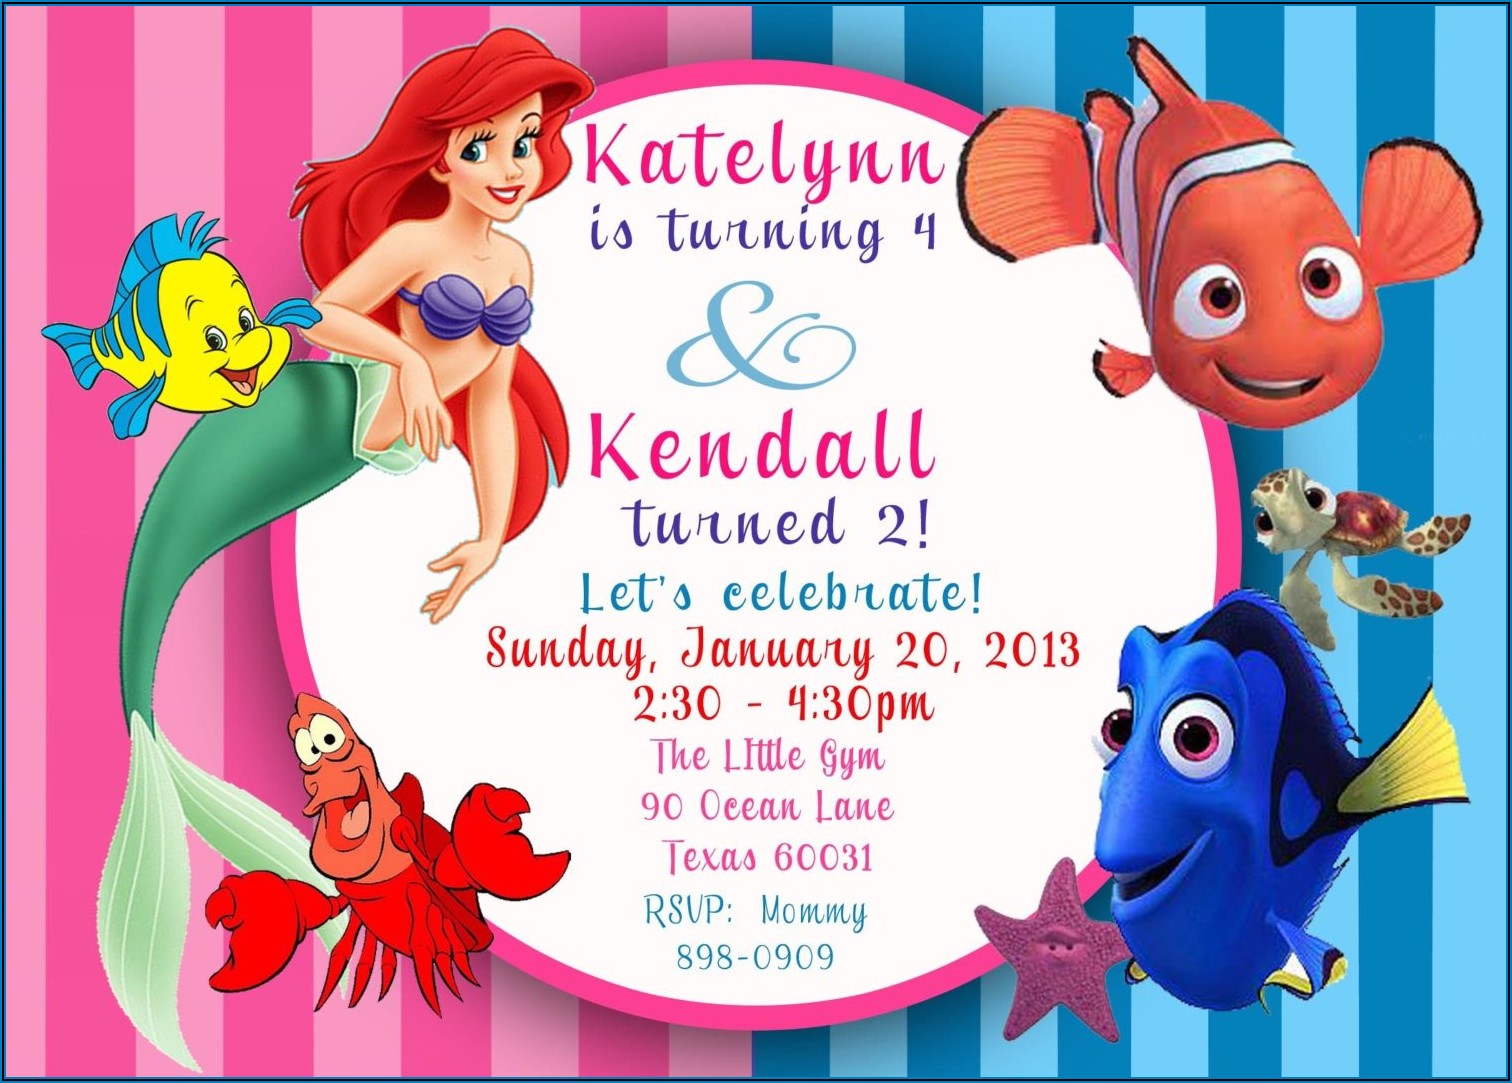 Printable Mermaid Invitations Free